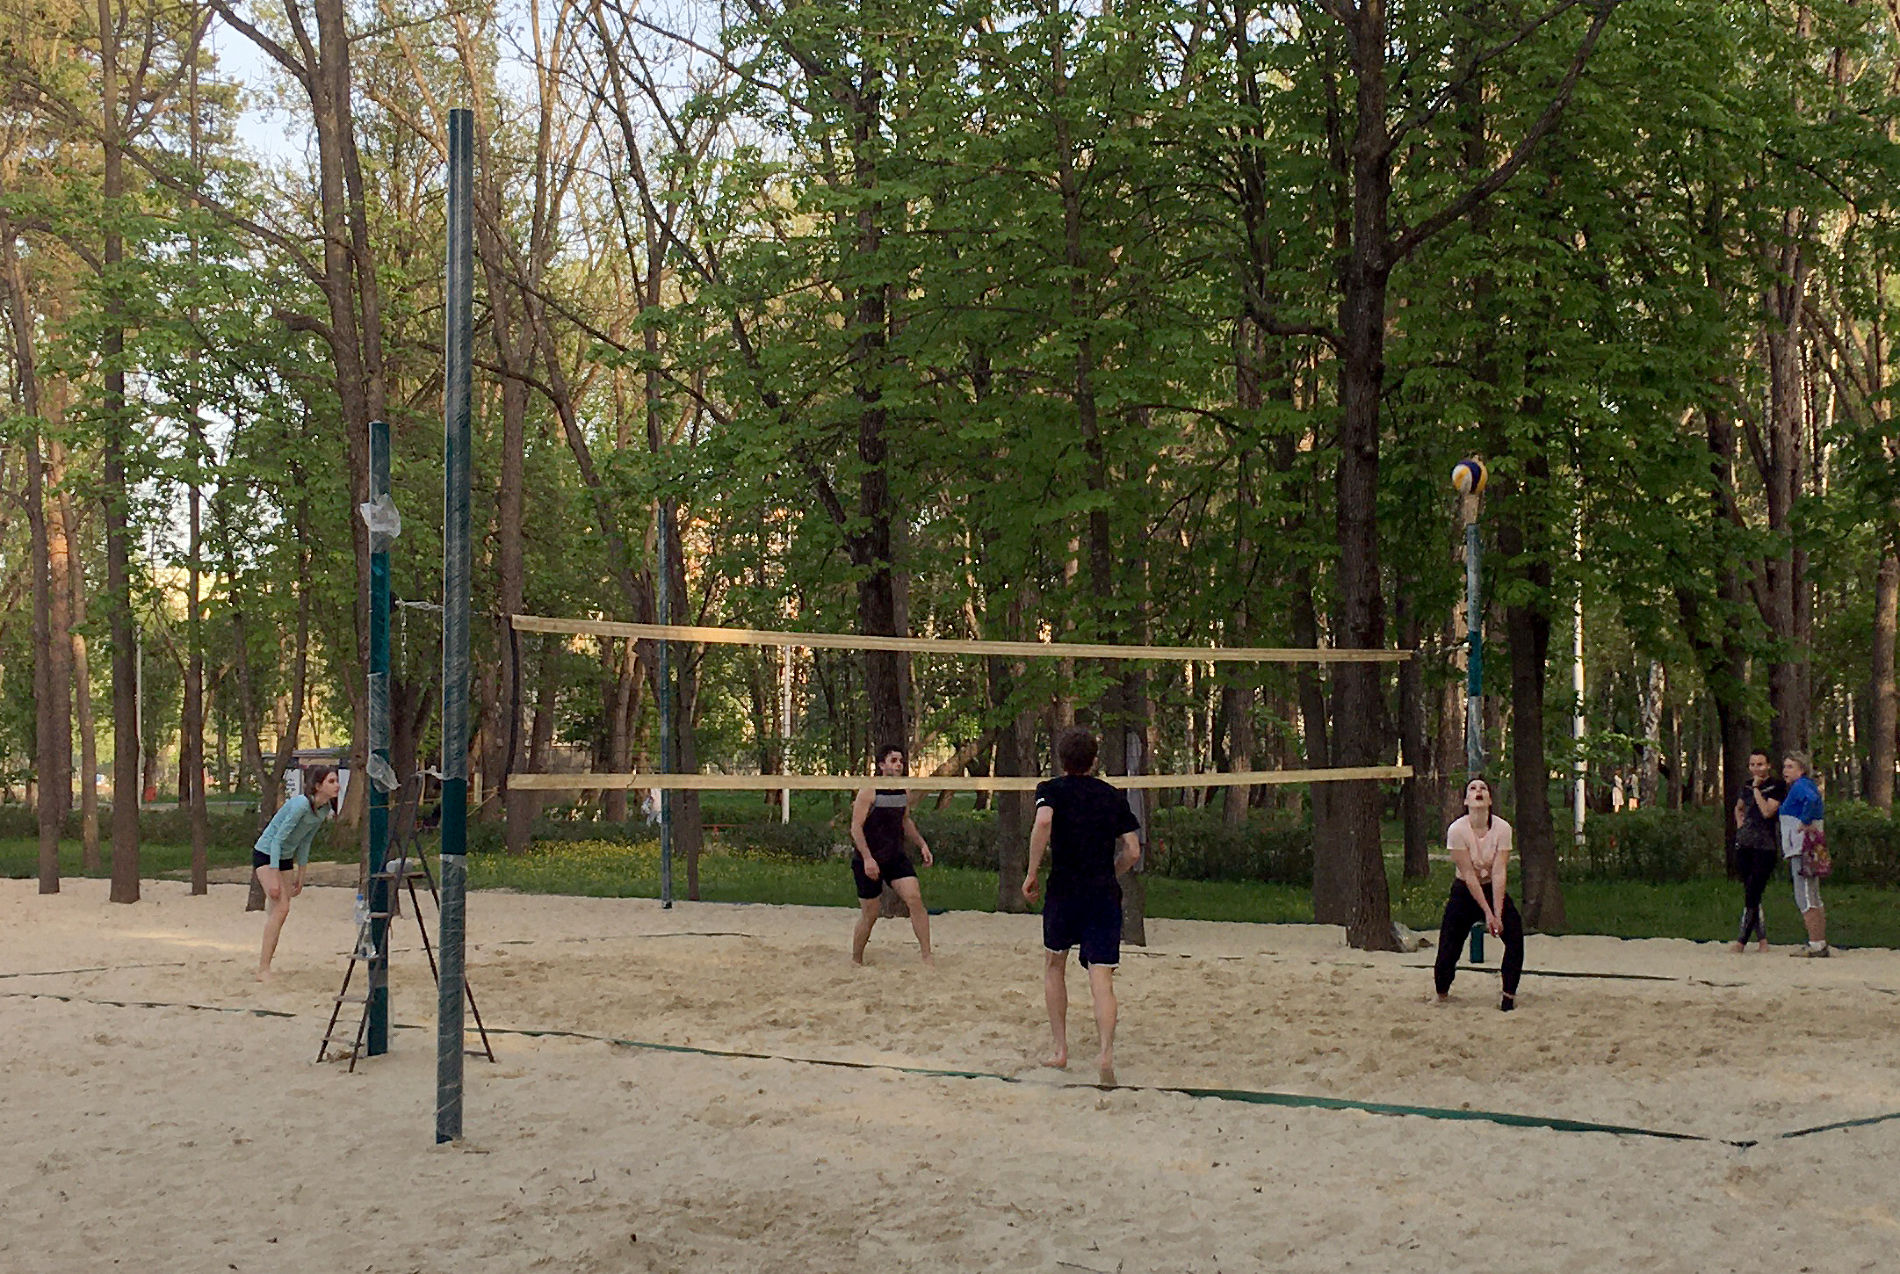 Да и парковая волейбольная площадка вполне похожа на кадр из презентации © Фото Тимура Рыжкова, Yuga.ru